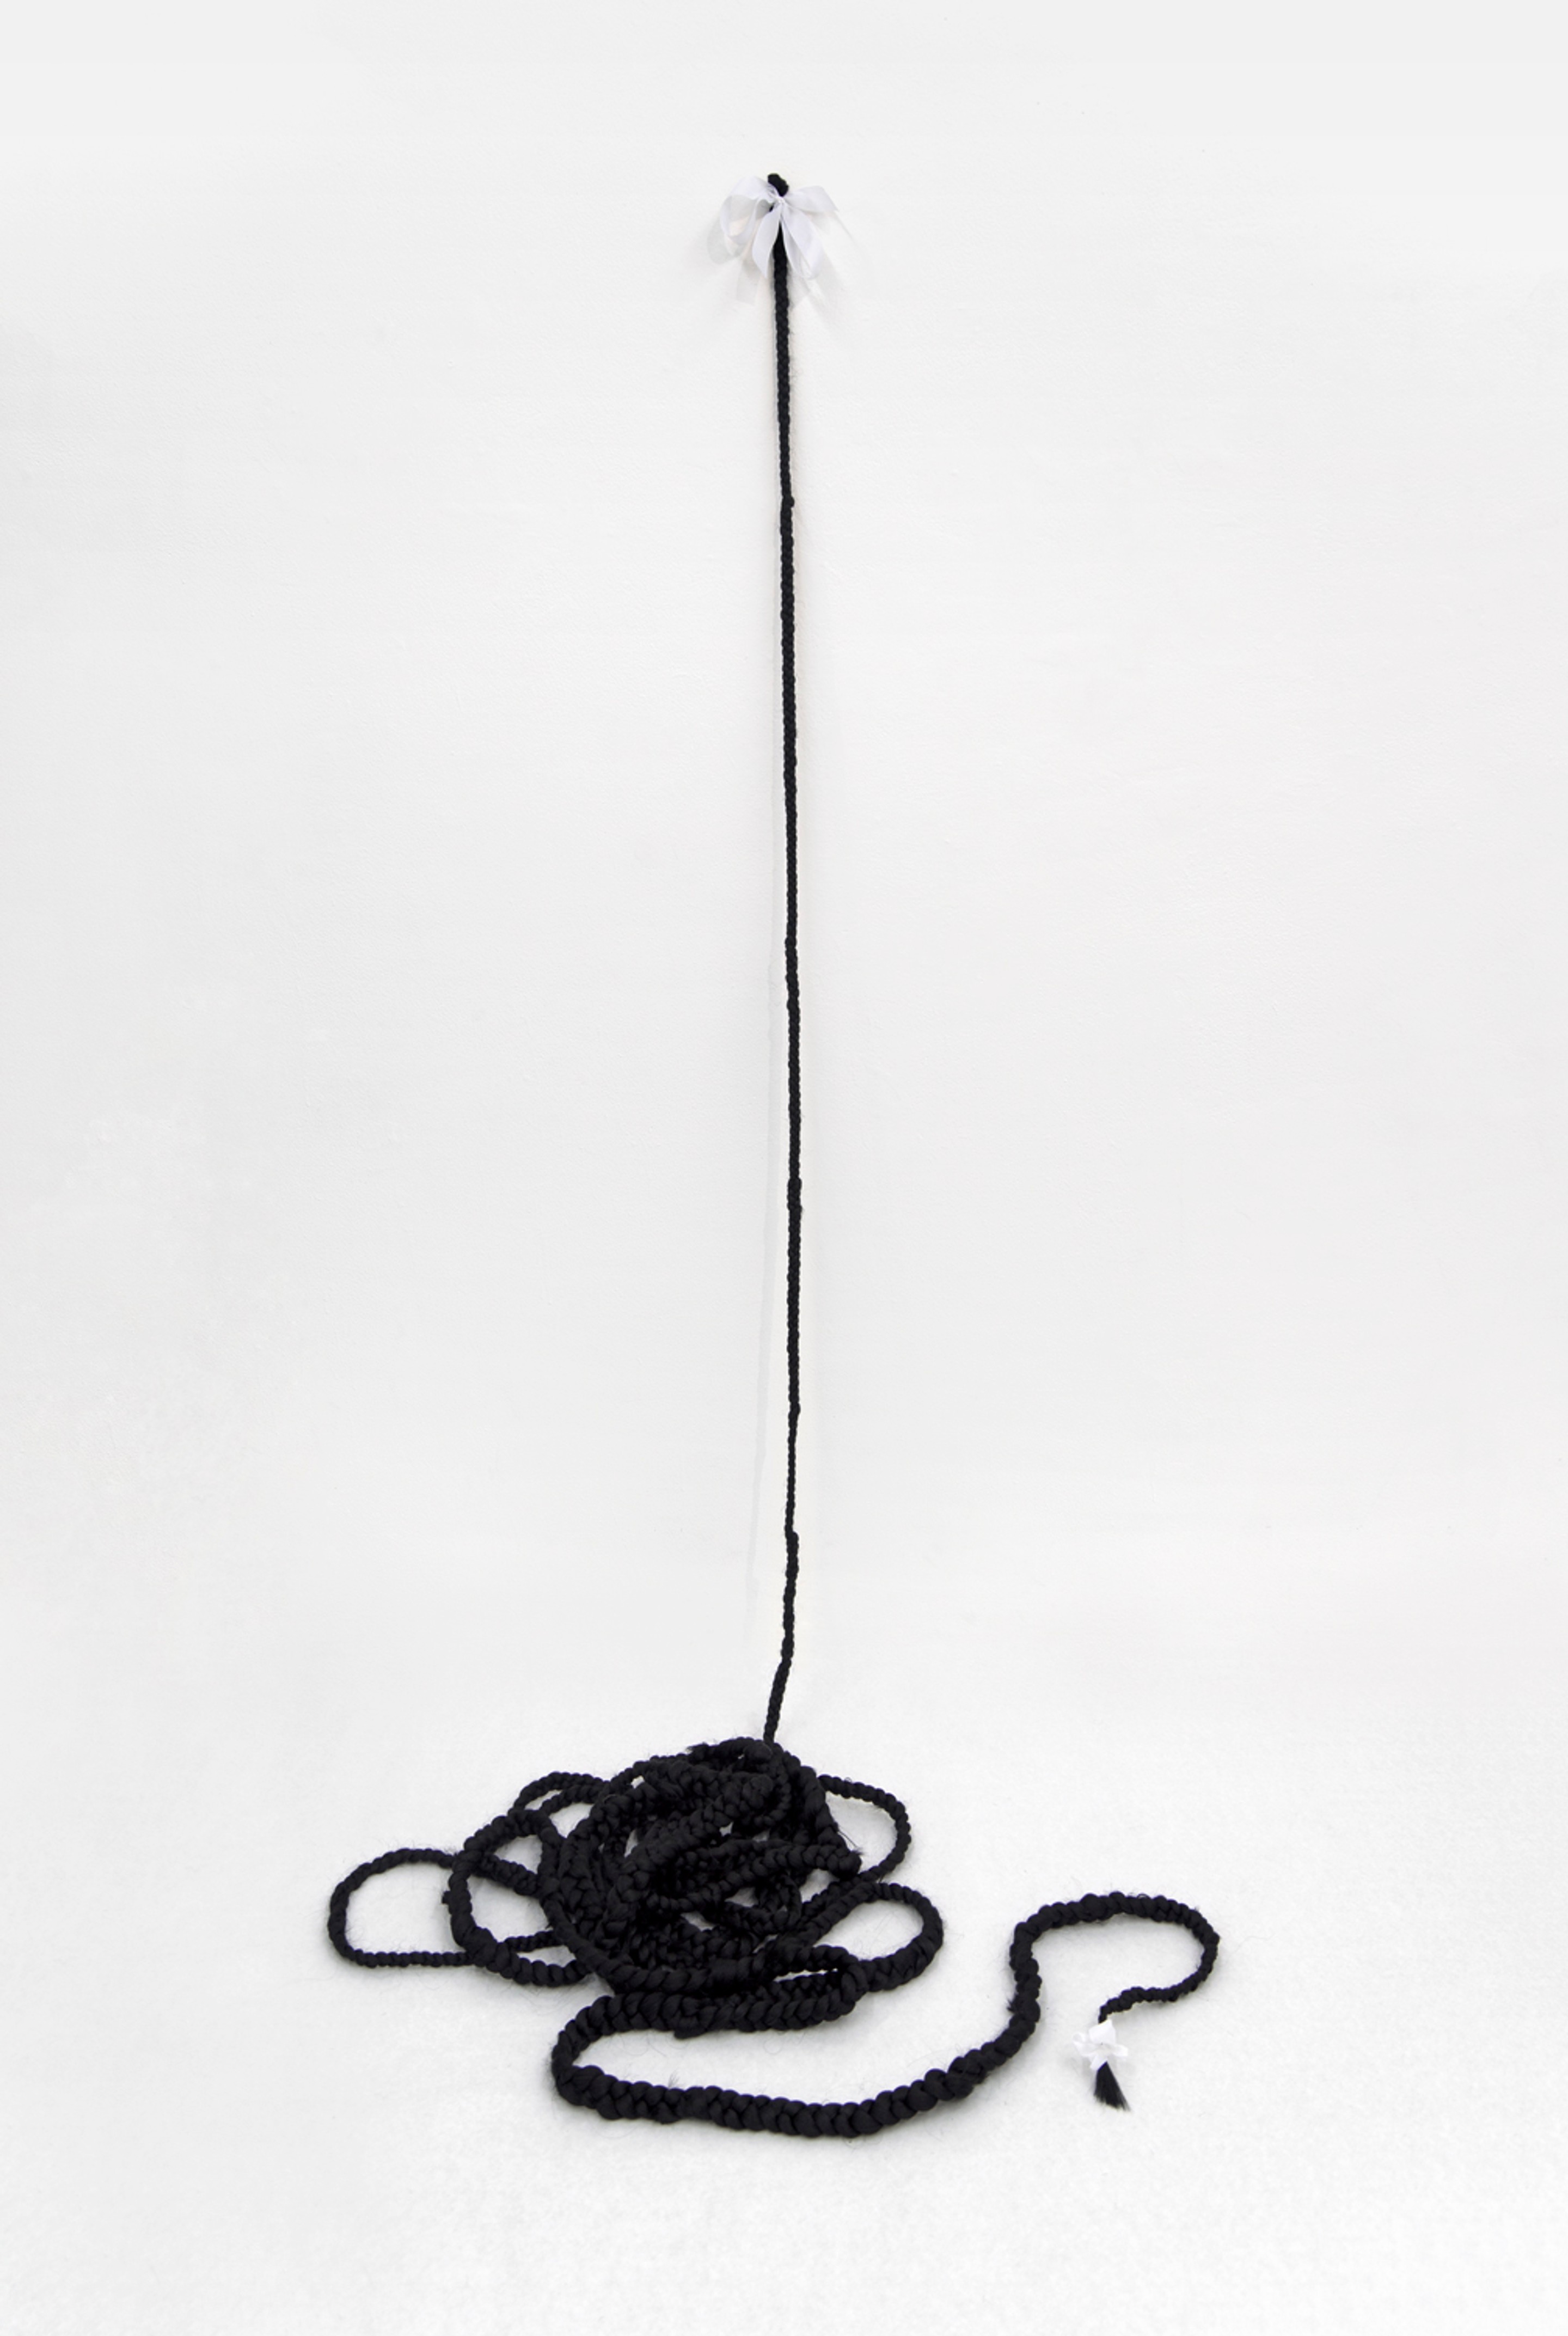 Kaa 1963 (2017)
Kanekalon hair, ribbon. 553 inches in length (1405 cm)